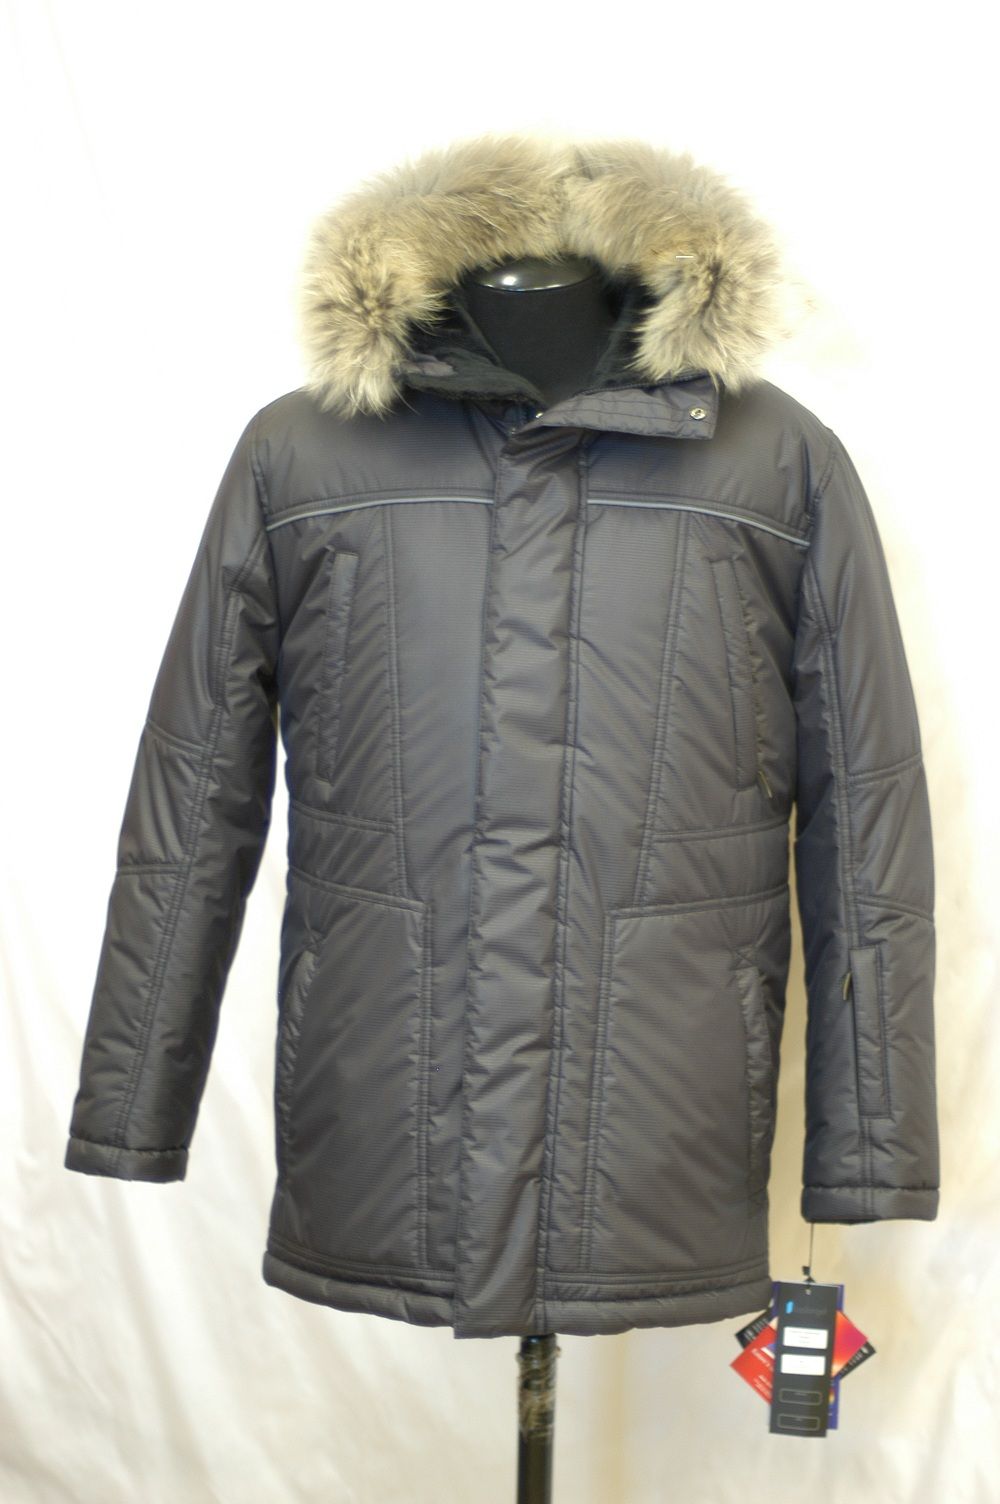 Тёплая куртка-аляска Laplanger Астон